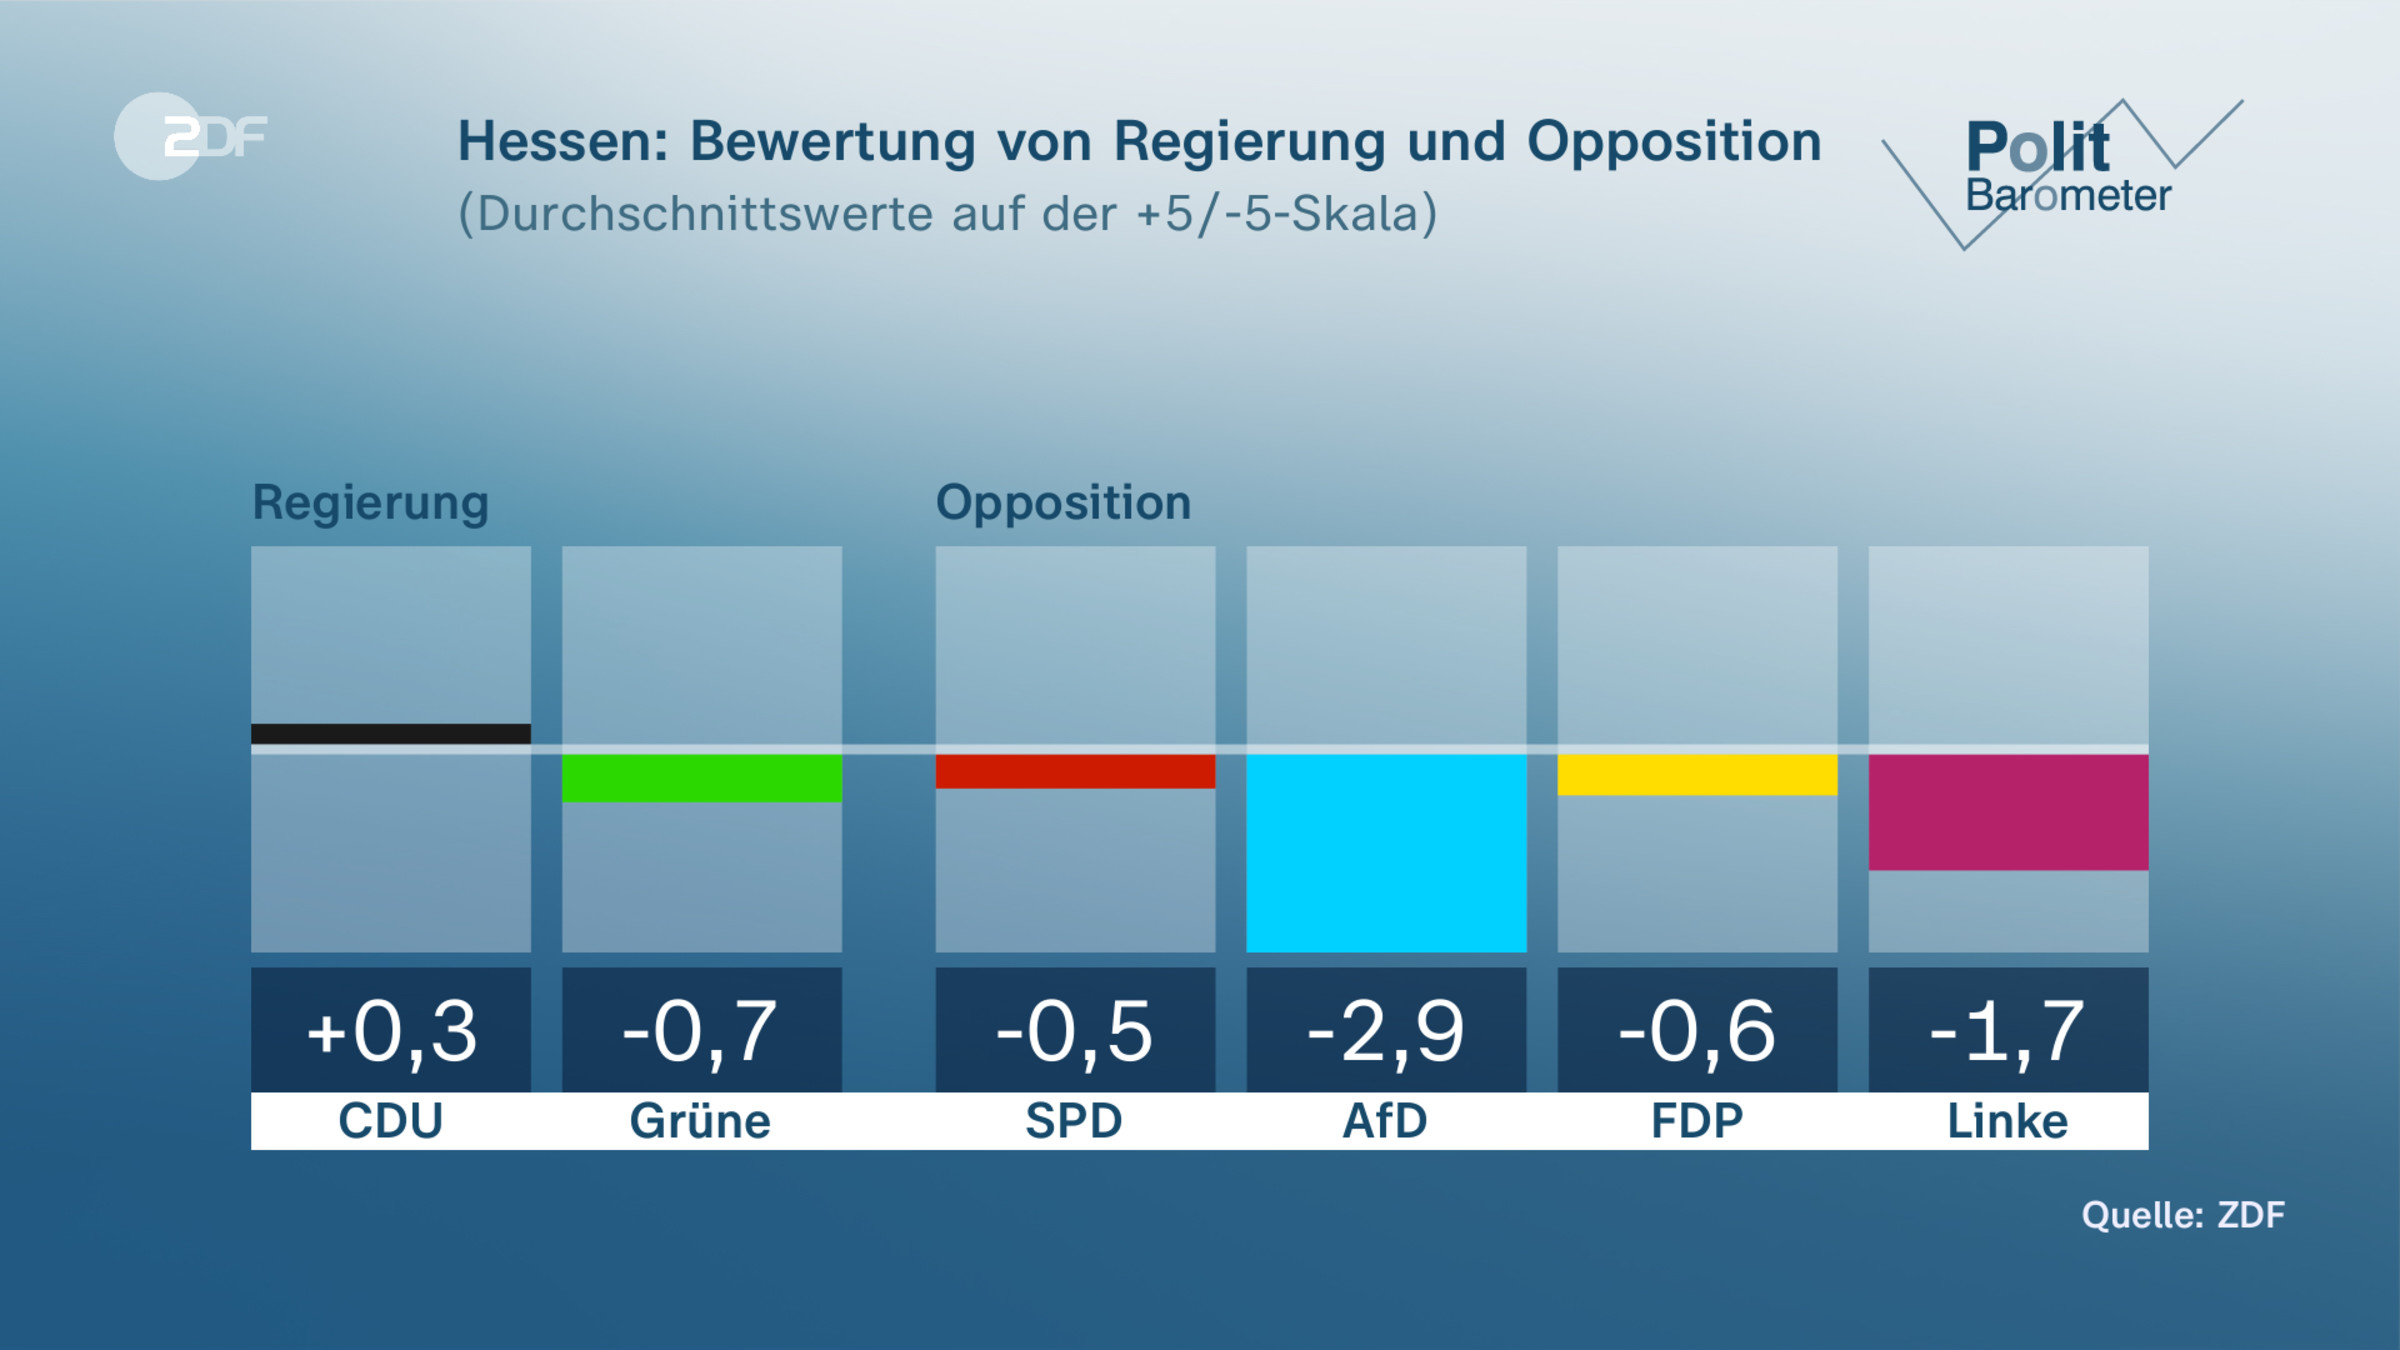 Hessen: Bewertung von Regierung und Opposition 